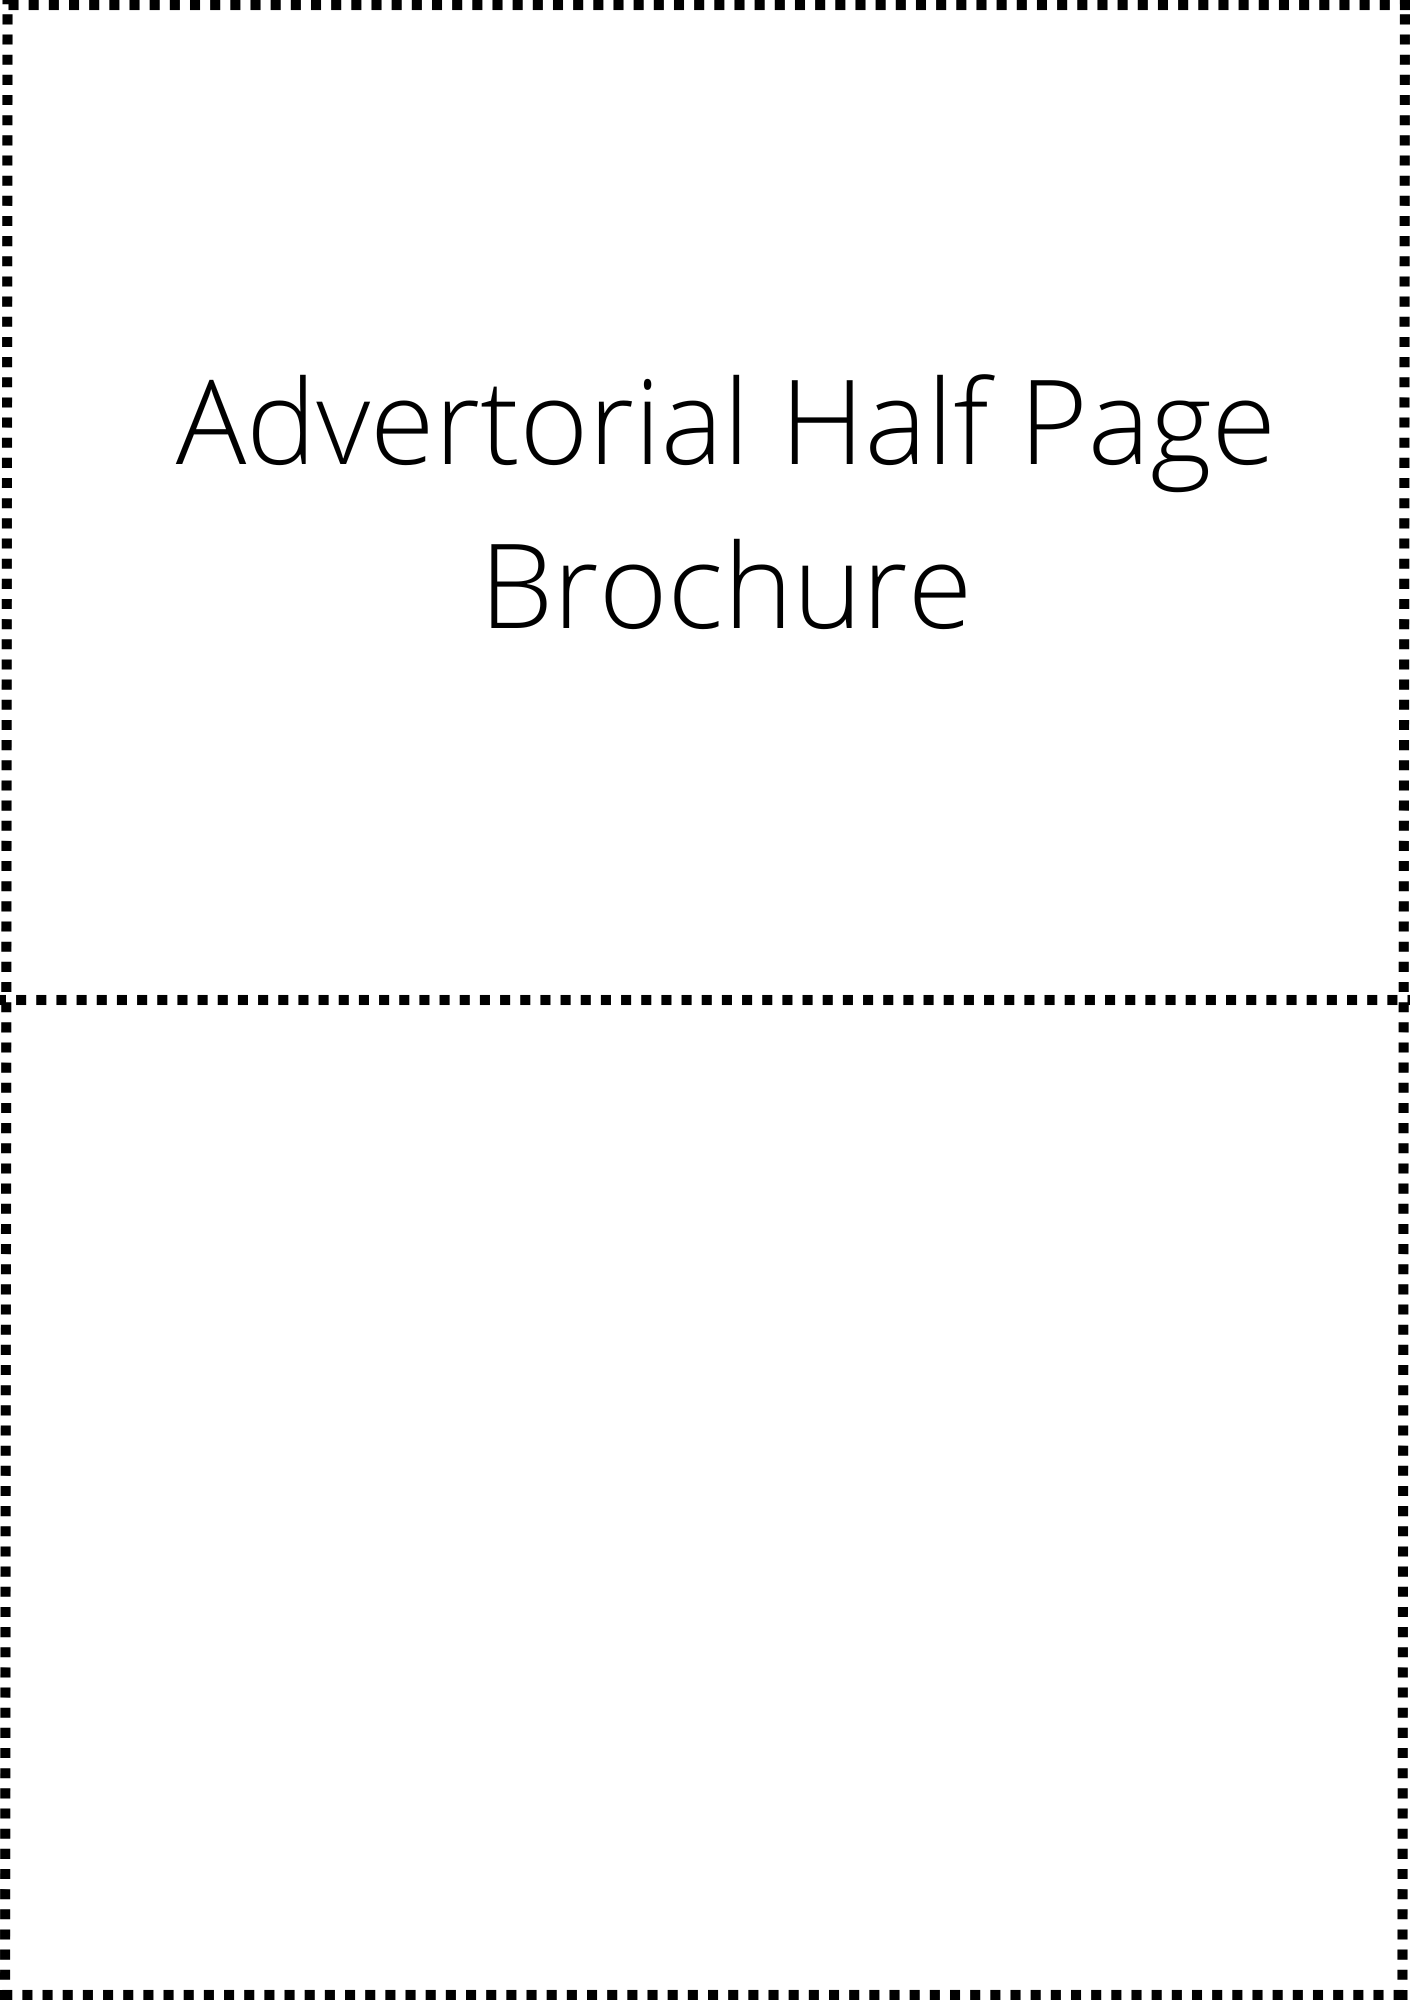 Advertorial Half Page - Brochure